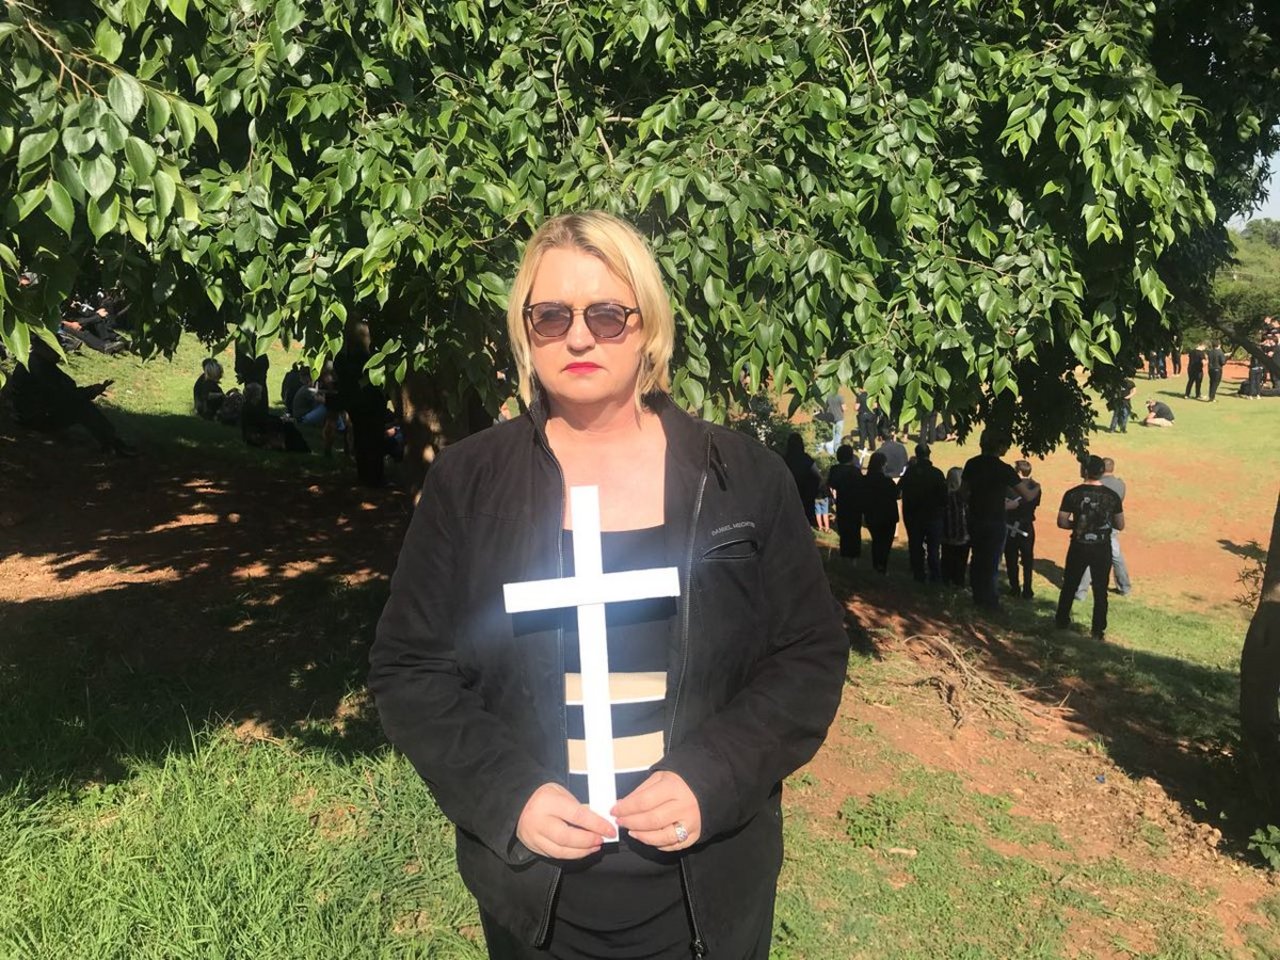 Gedenken an ermorderte Farmer: Teilnehmerin an einer Kundgebung am "Schwarzen Montag". (Farmers Weekly / Annette Steyn)